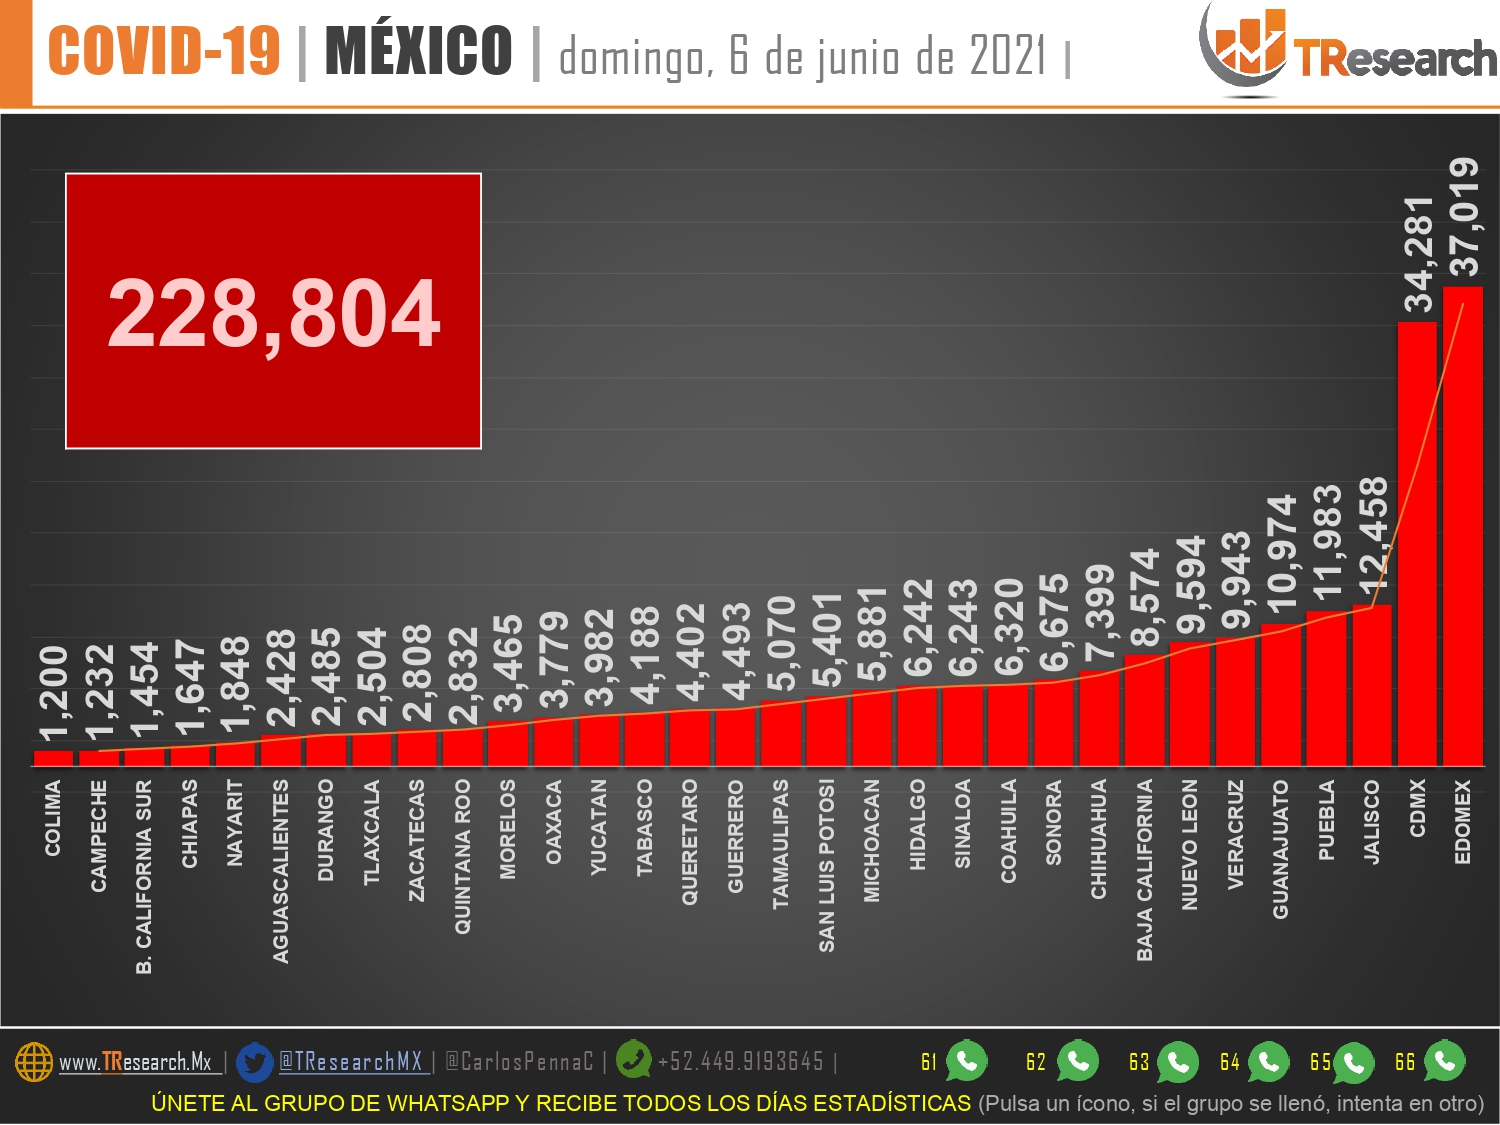 El día de la elección, México registró 50 muertos y mil 401 contagios más de Covid19